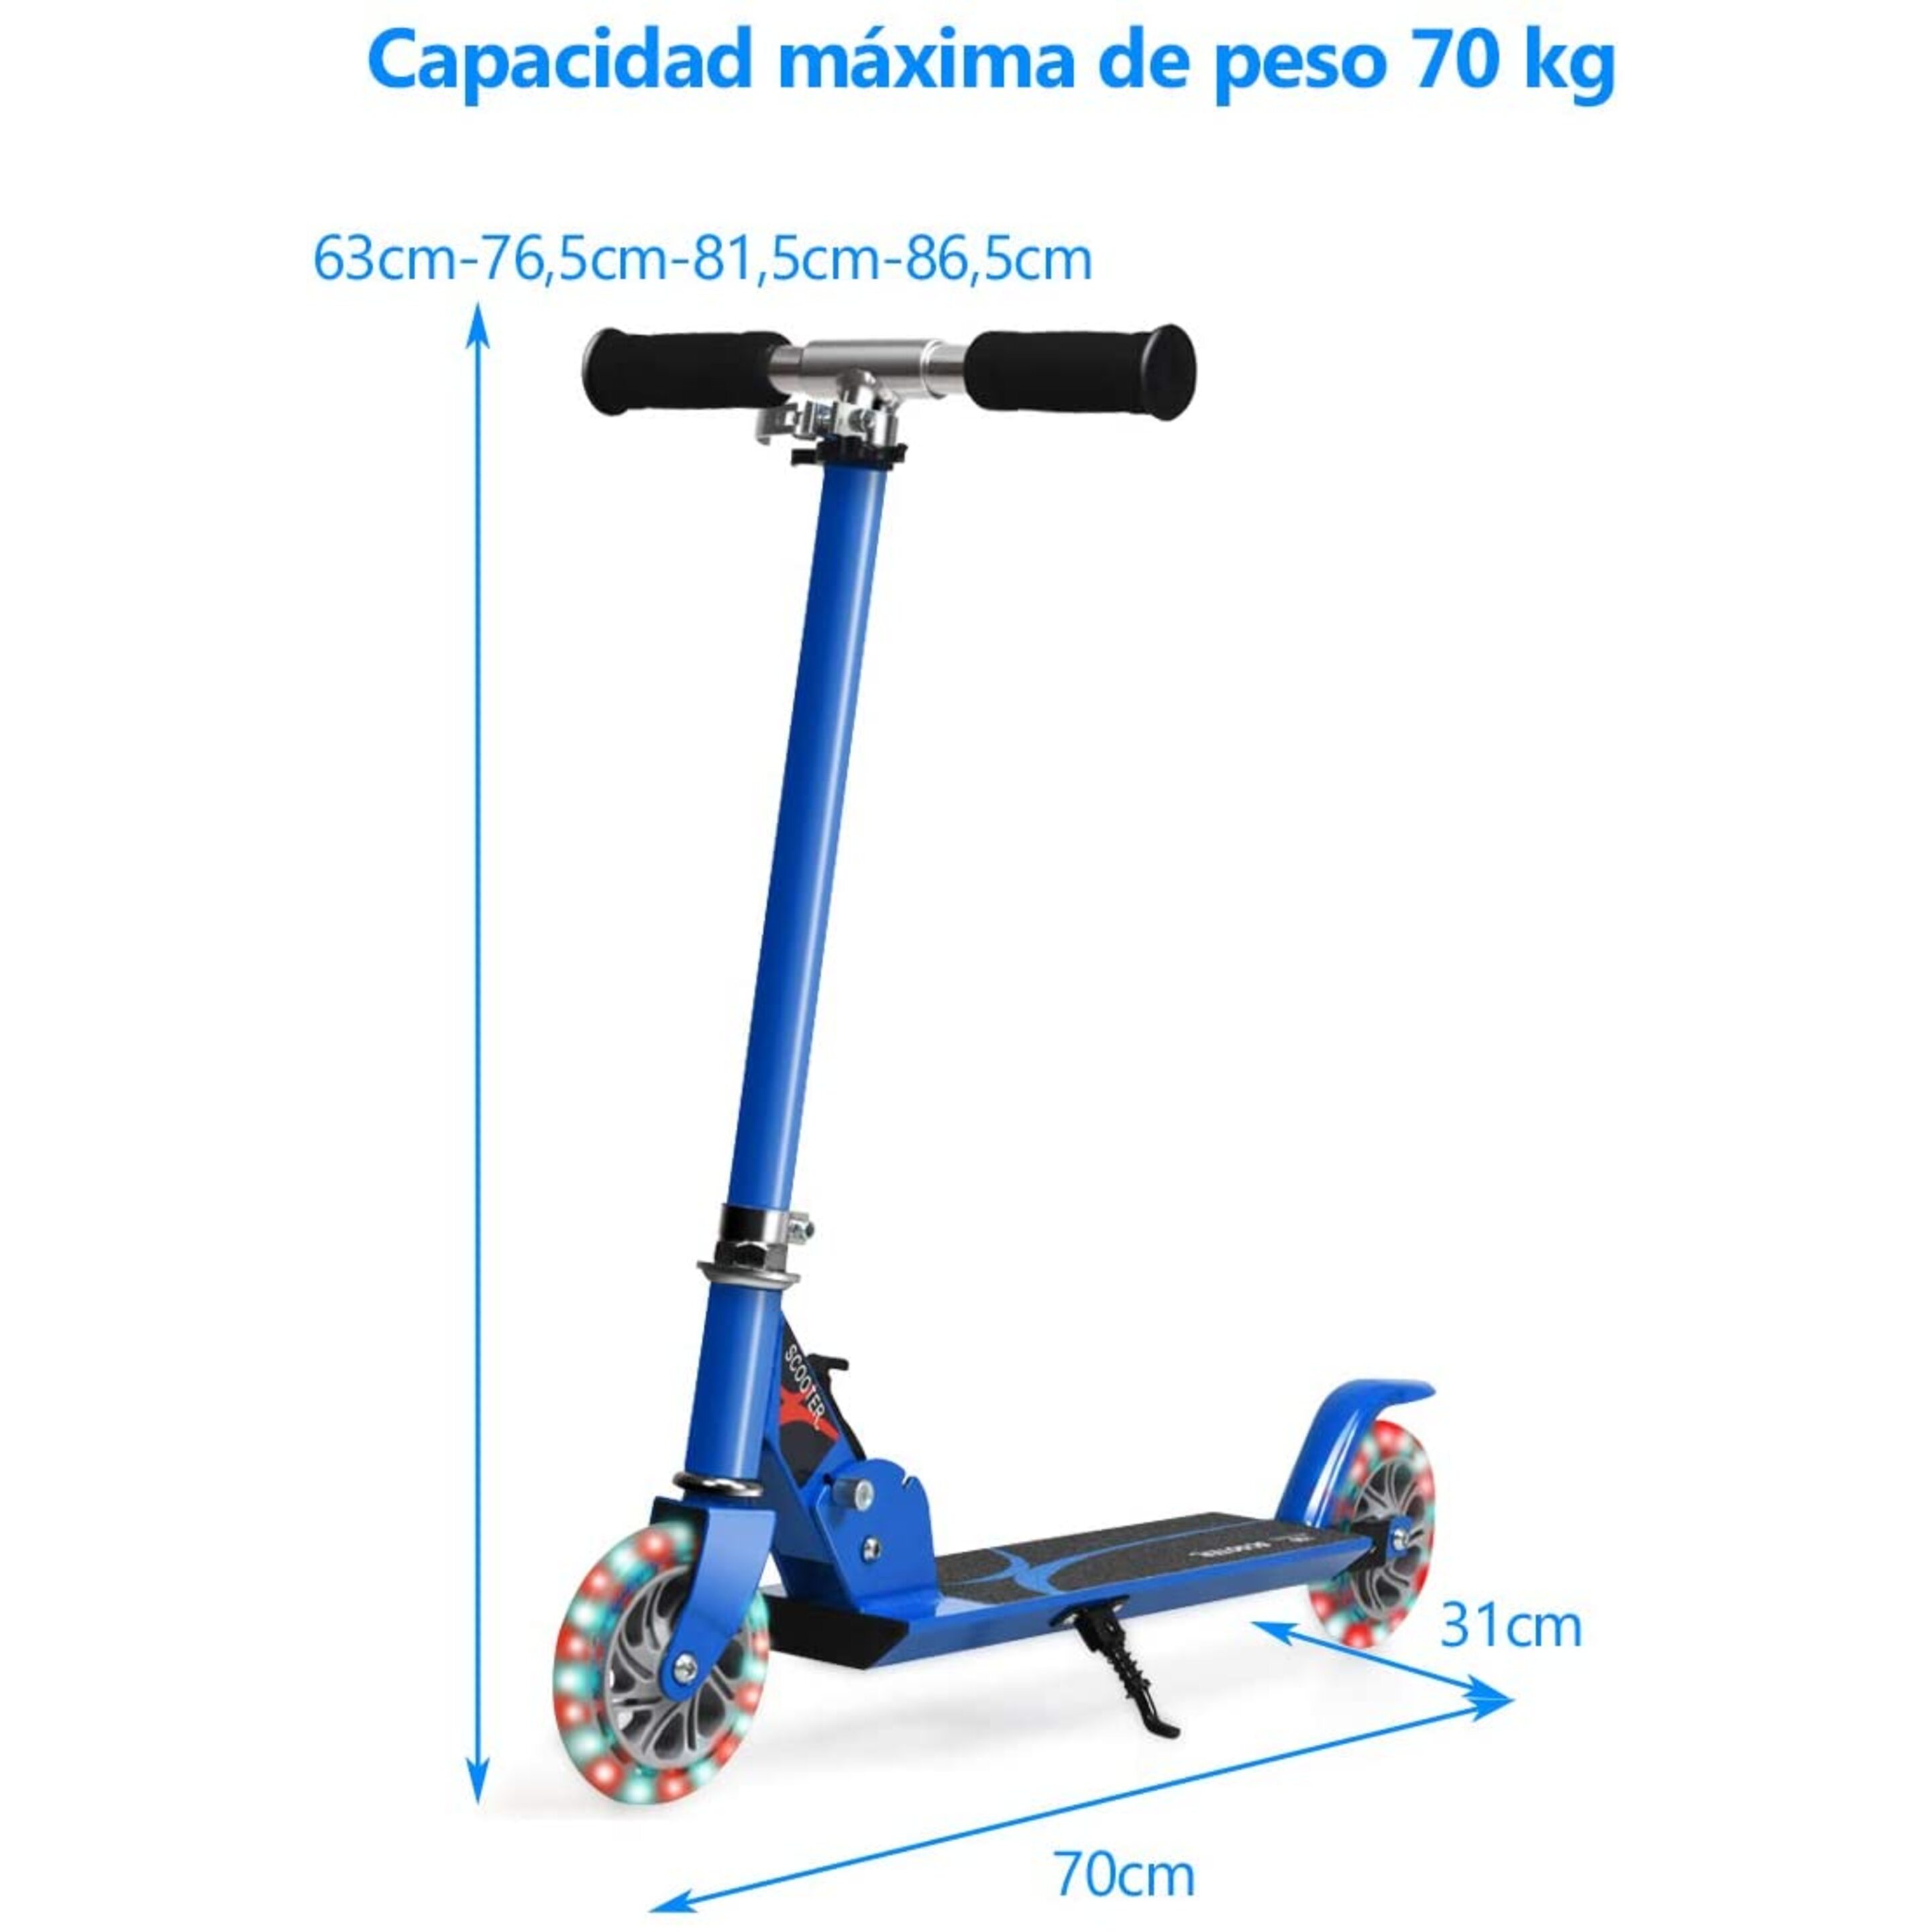 Patinete Plegable De Aluminio Altura Ajustable Con 2 Ruedas Costway - Negro/Azul  MKP